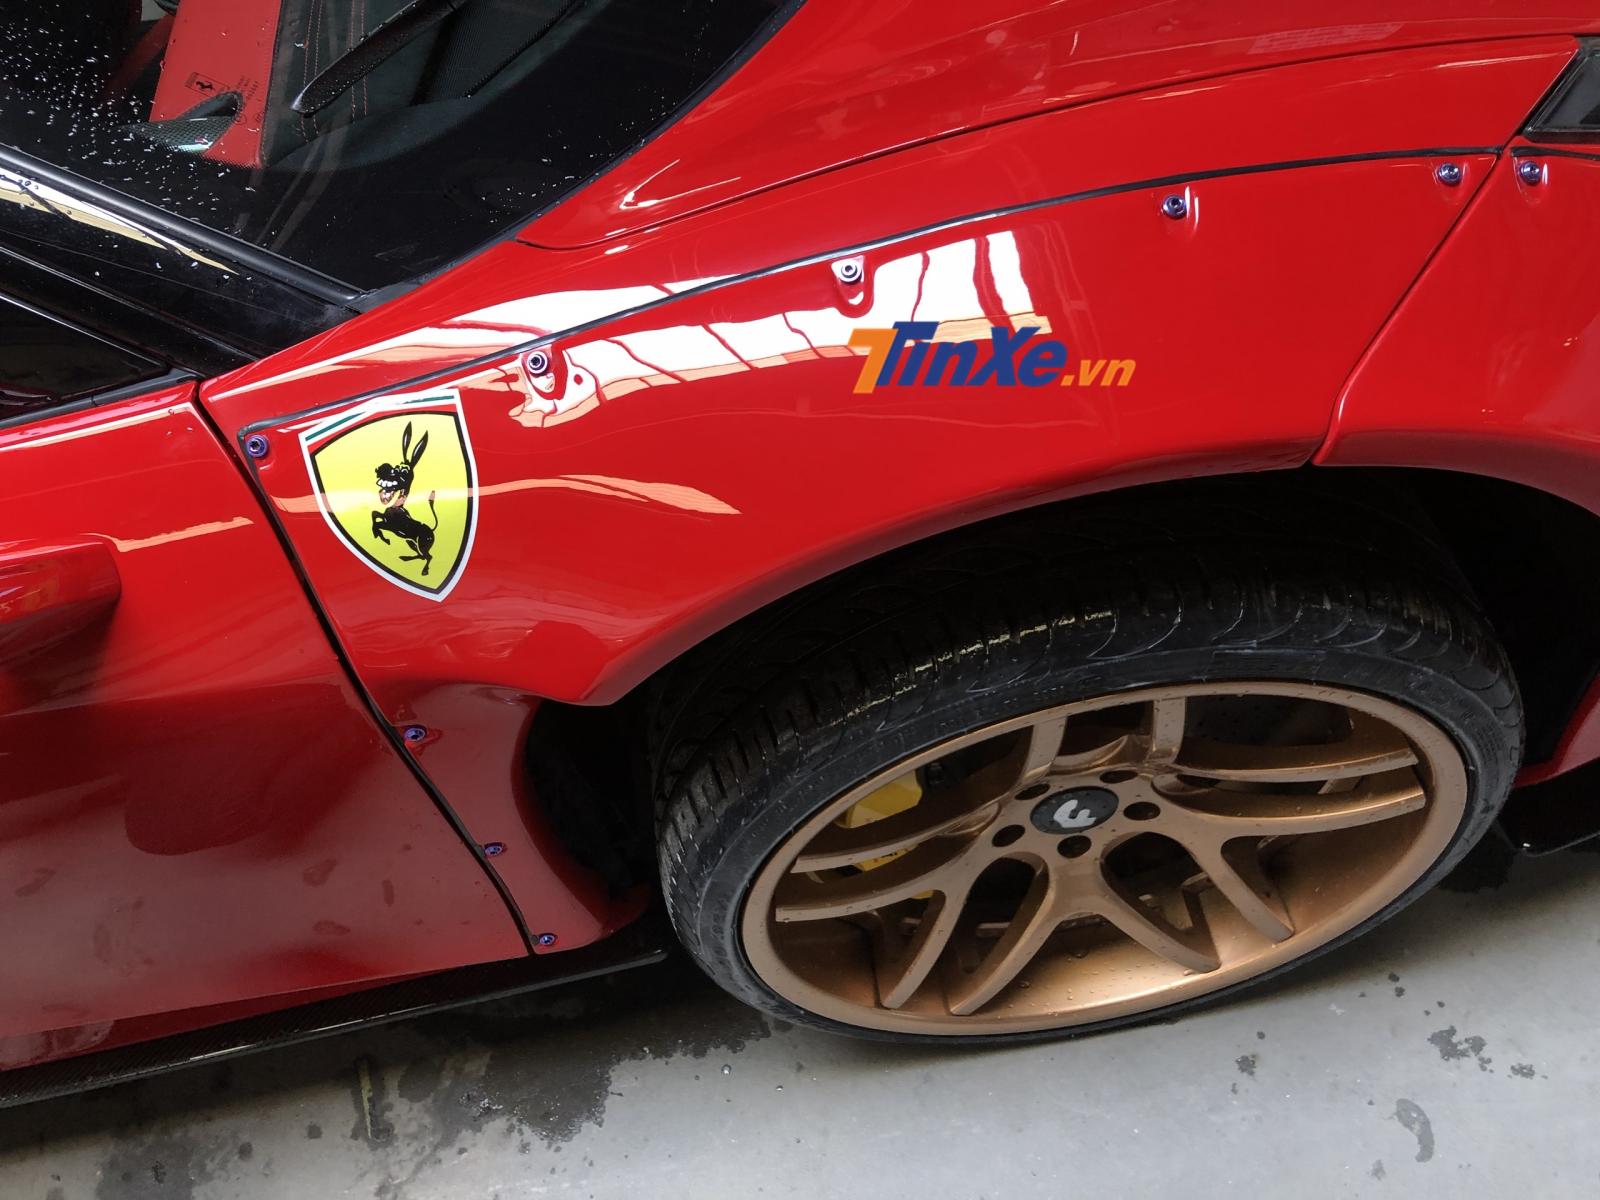 Logo ngựa chồm quen thuộc của hãng siêu xe Ferrari được chủ nhân chiếc xe này thay bằng loại khác